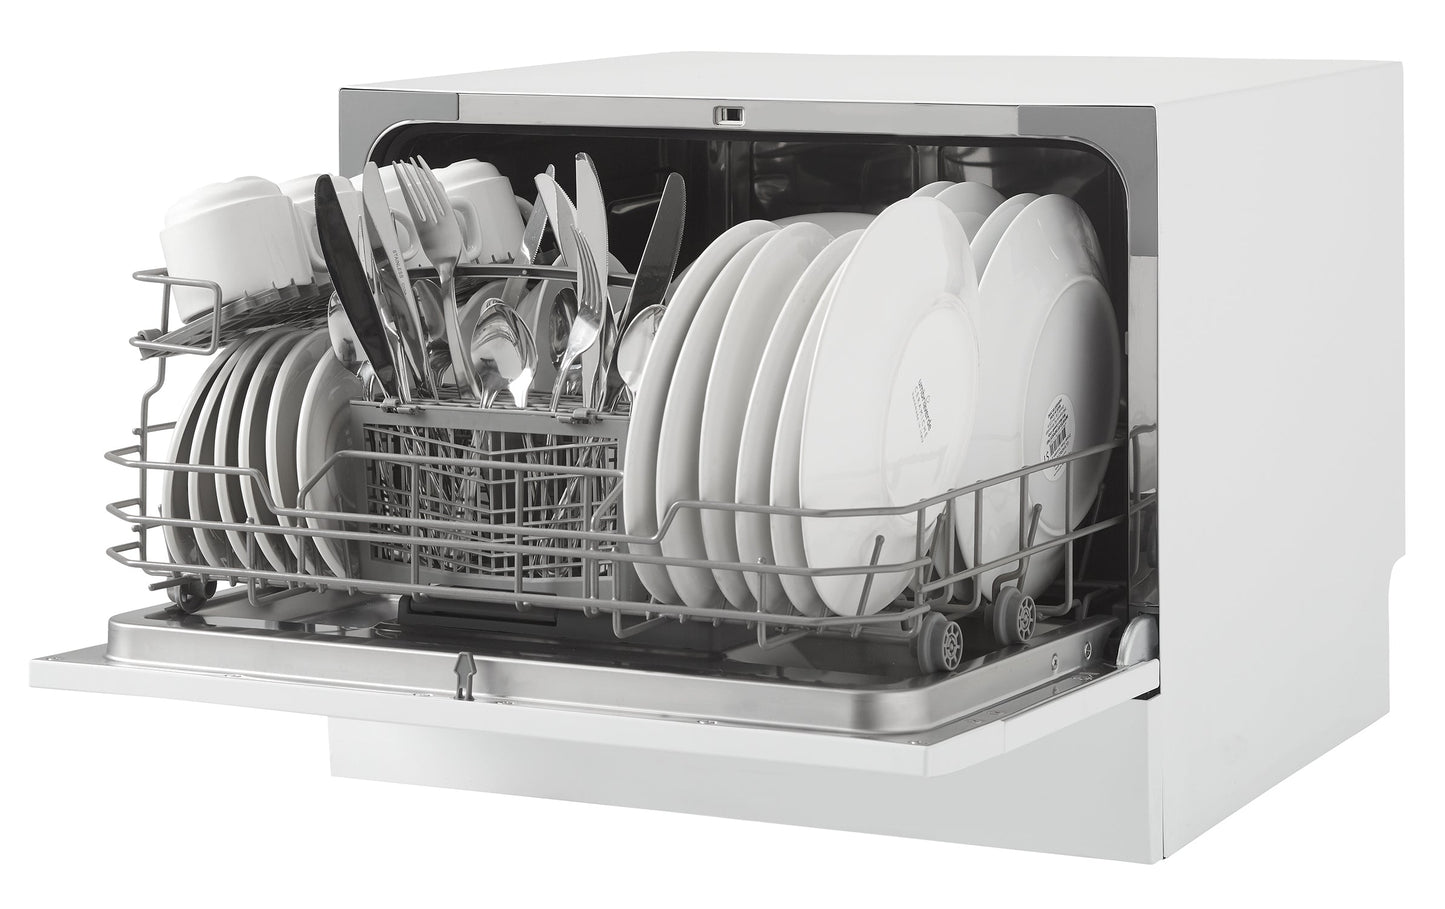 Danby 22" White 6-Place Setting Portable Countertop Dishwasher - DDW621WDB